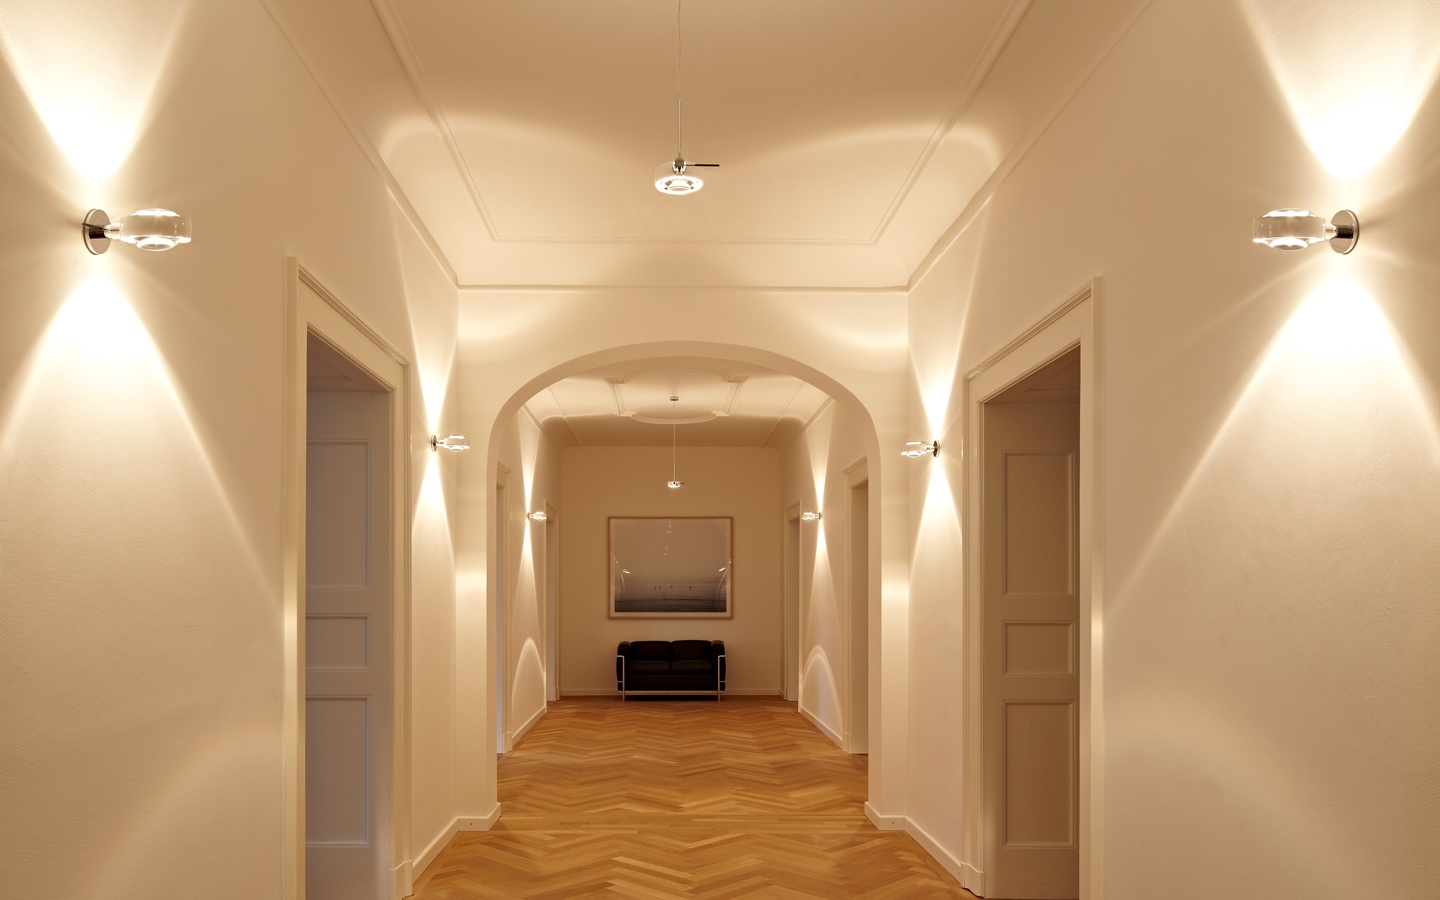 Поставь свет в коридоре. Коридор / Koridor (2022). Освещение в прихожей. Освещение в коридоре. Светильники в коридор и прихожую.